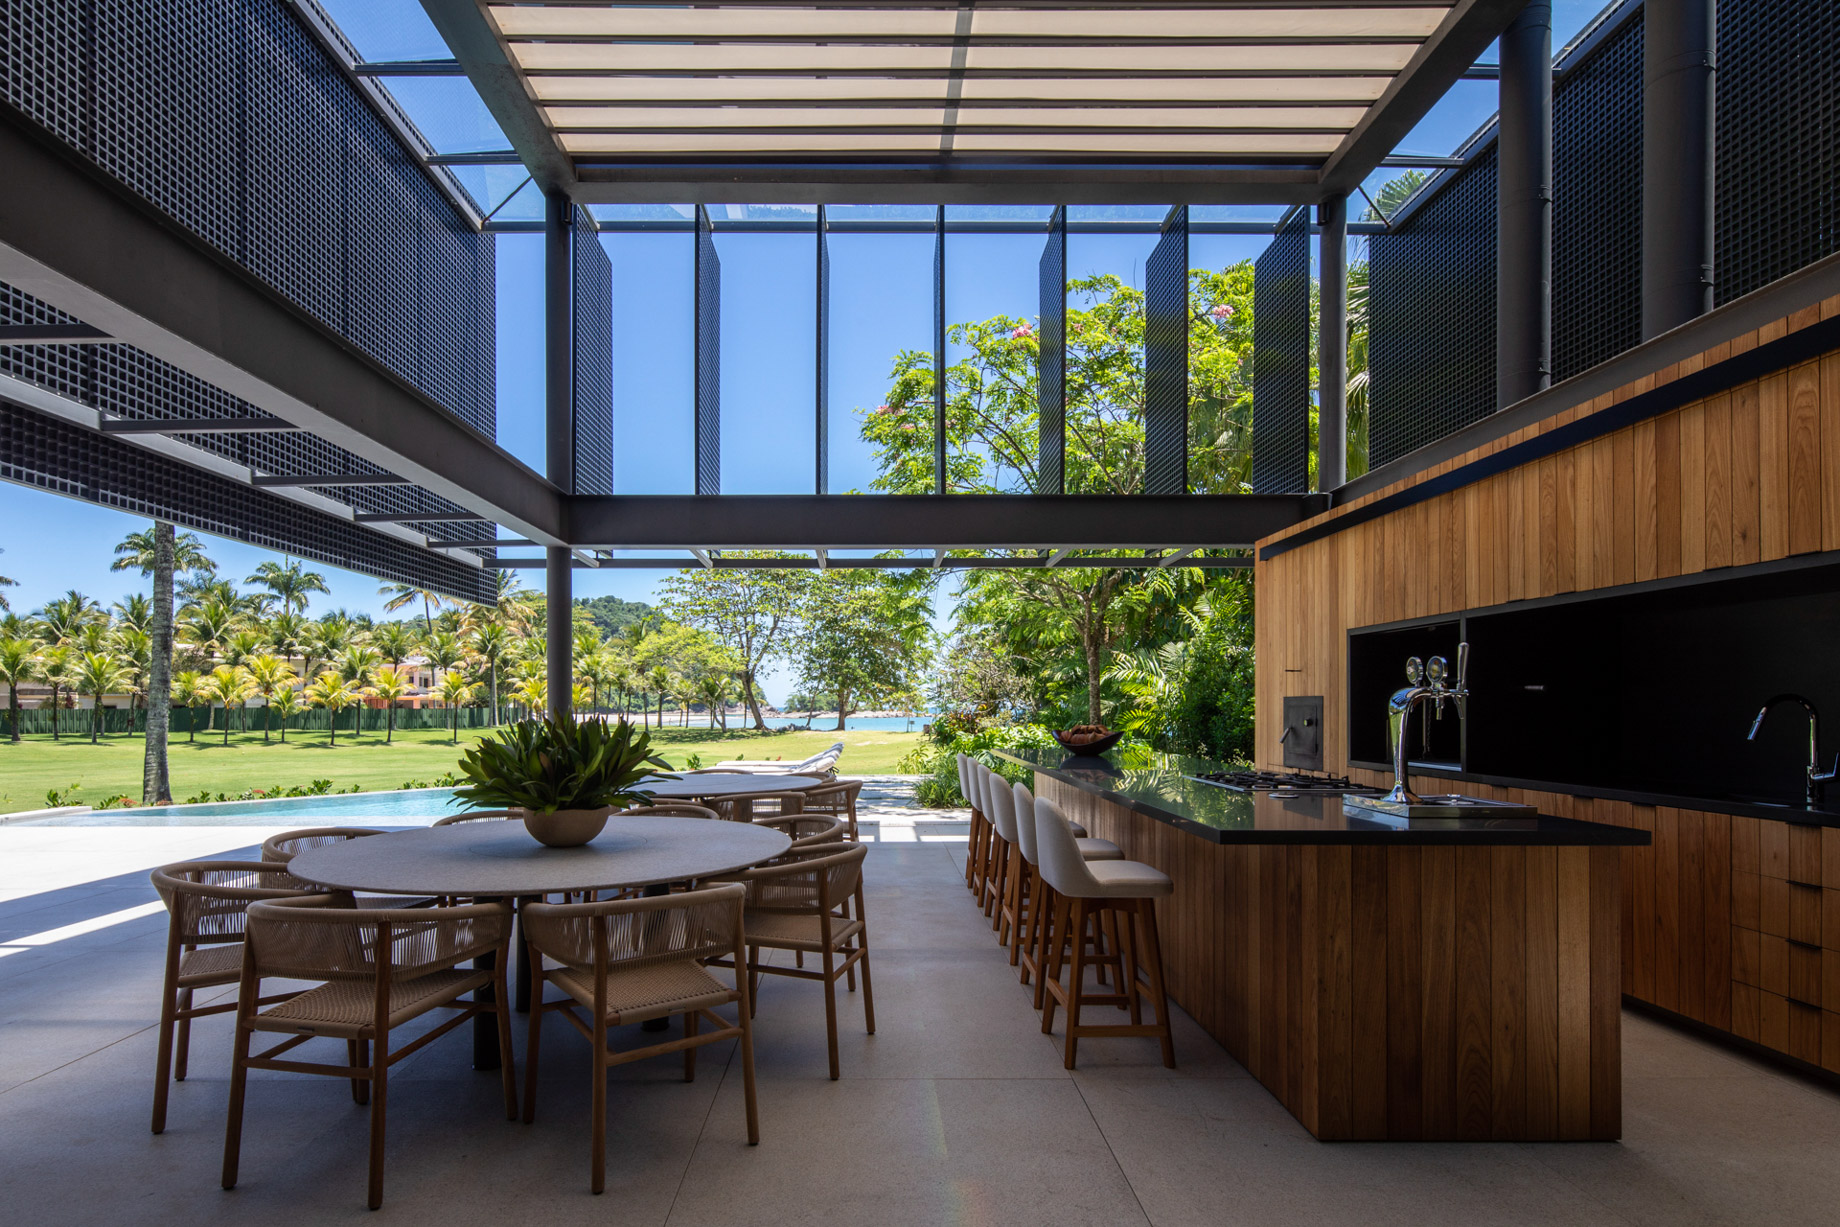 JSL House Costa Verde Residence - Paraty, Brazil